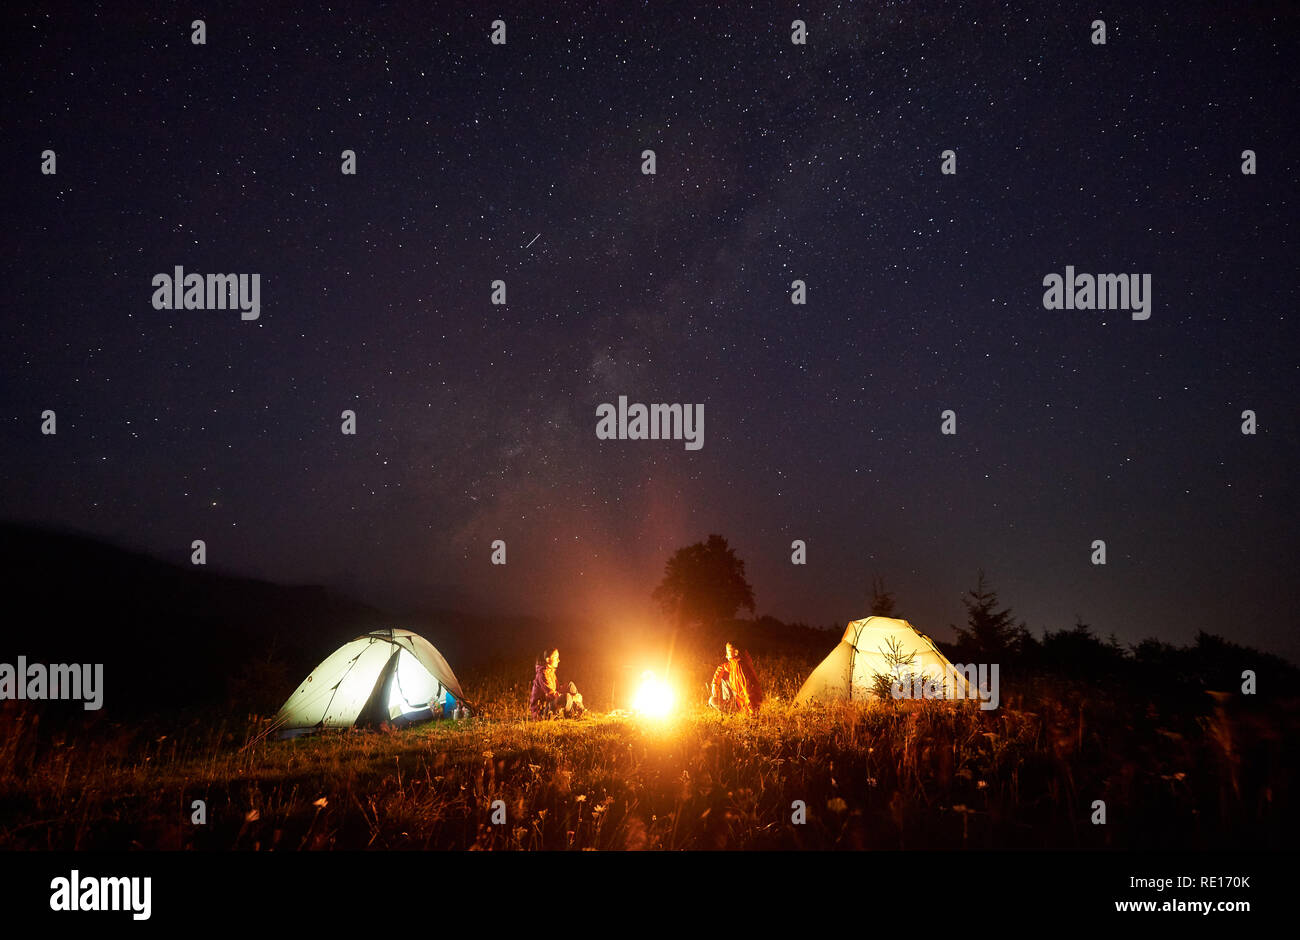 Nuit en camping dans les montagnes. Gravure de camp lumineux entre deux touristes, garçon et fille assise en face de l'autre en face de tentes lumineux bleu foncé sous un ciel étoilé sur les collines au loin. Banque D'Images